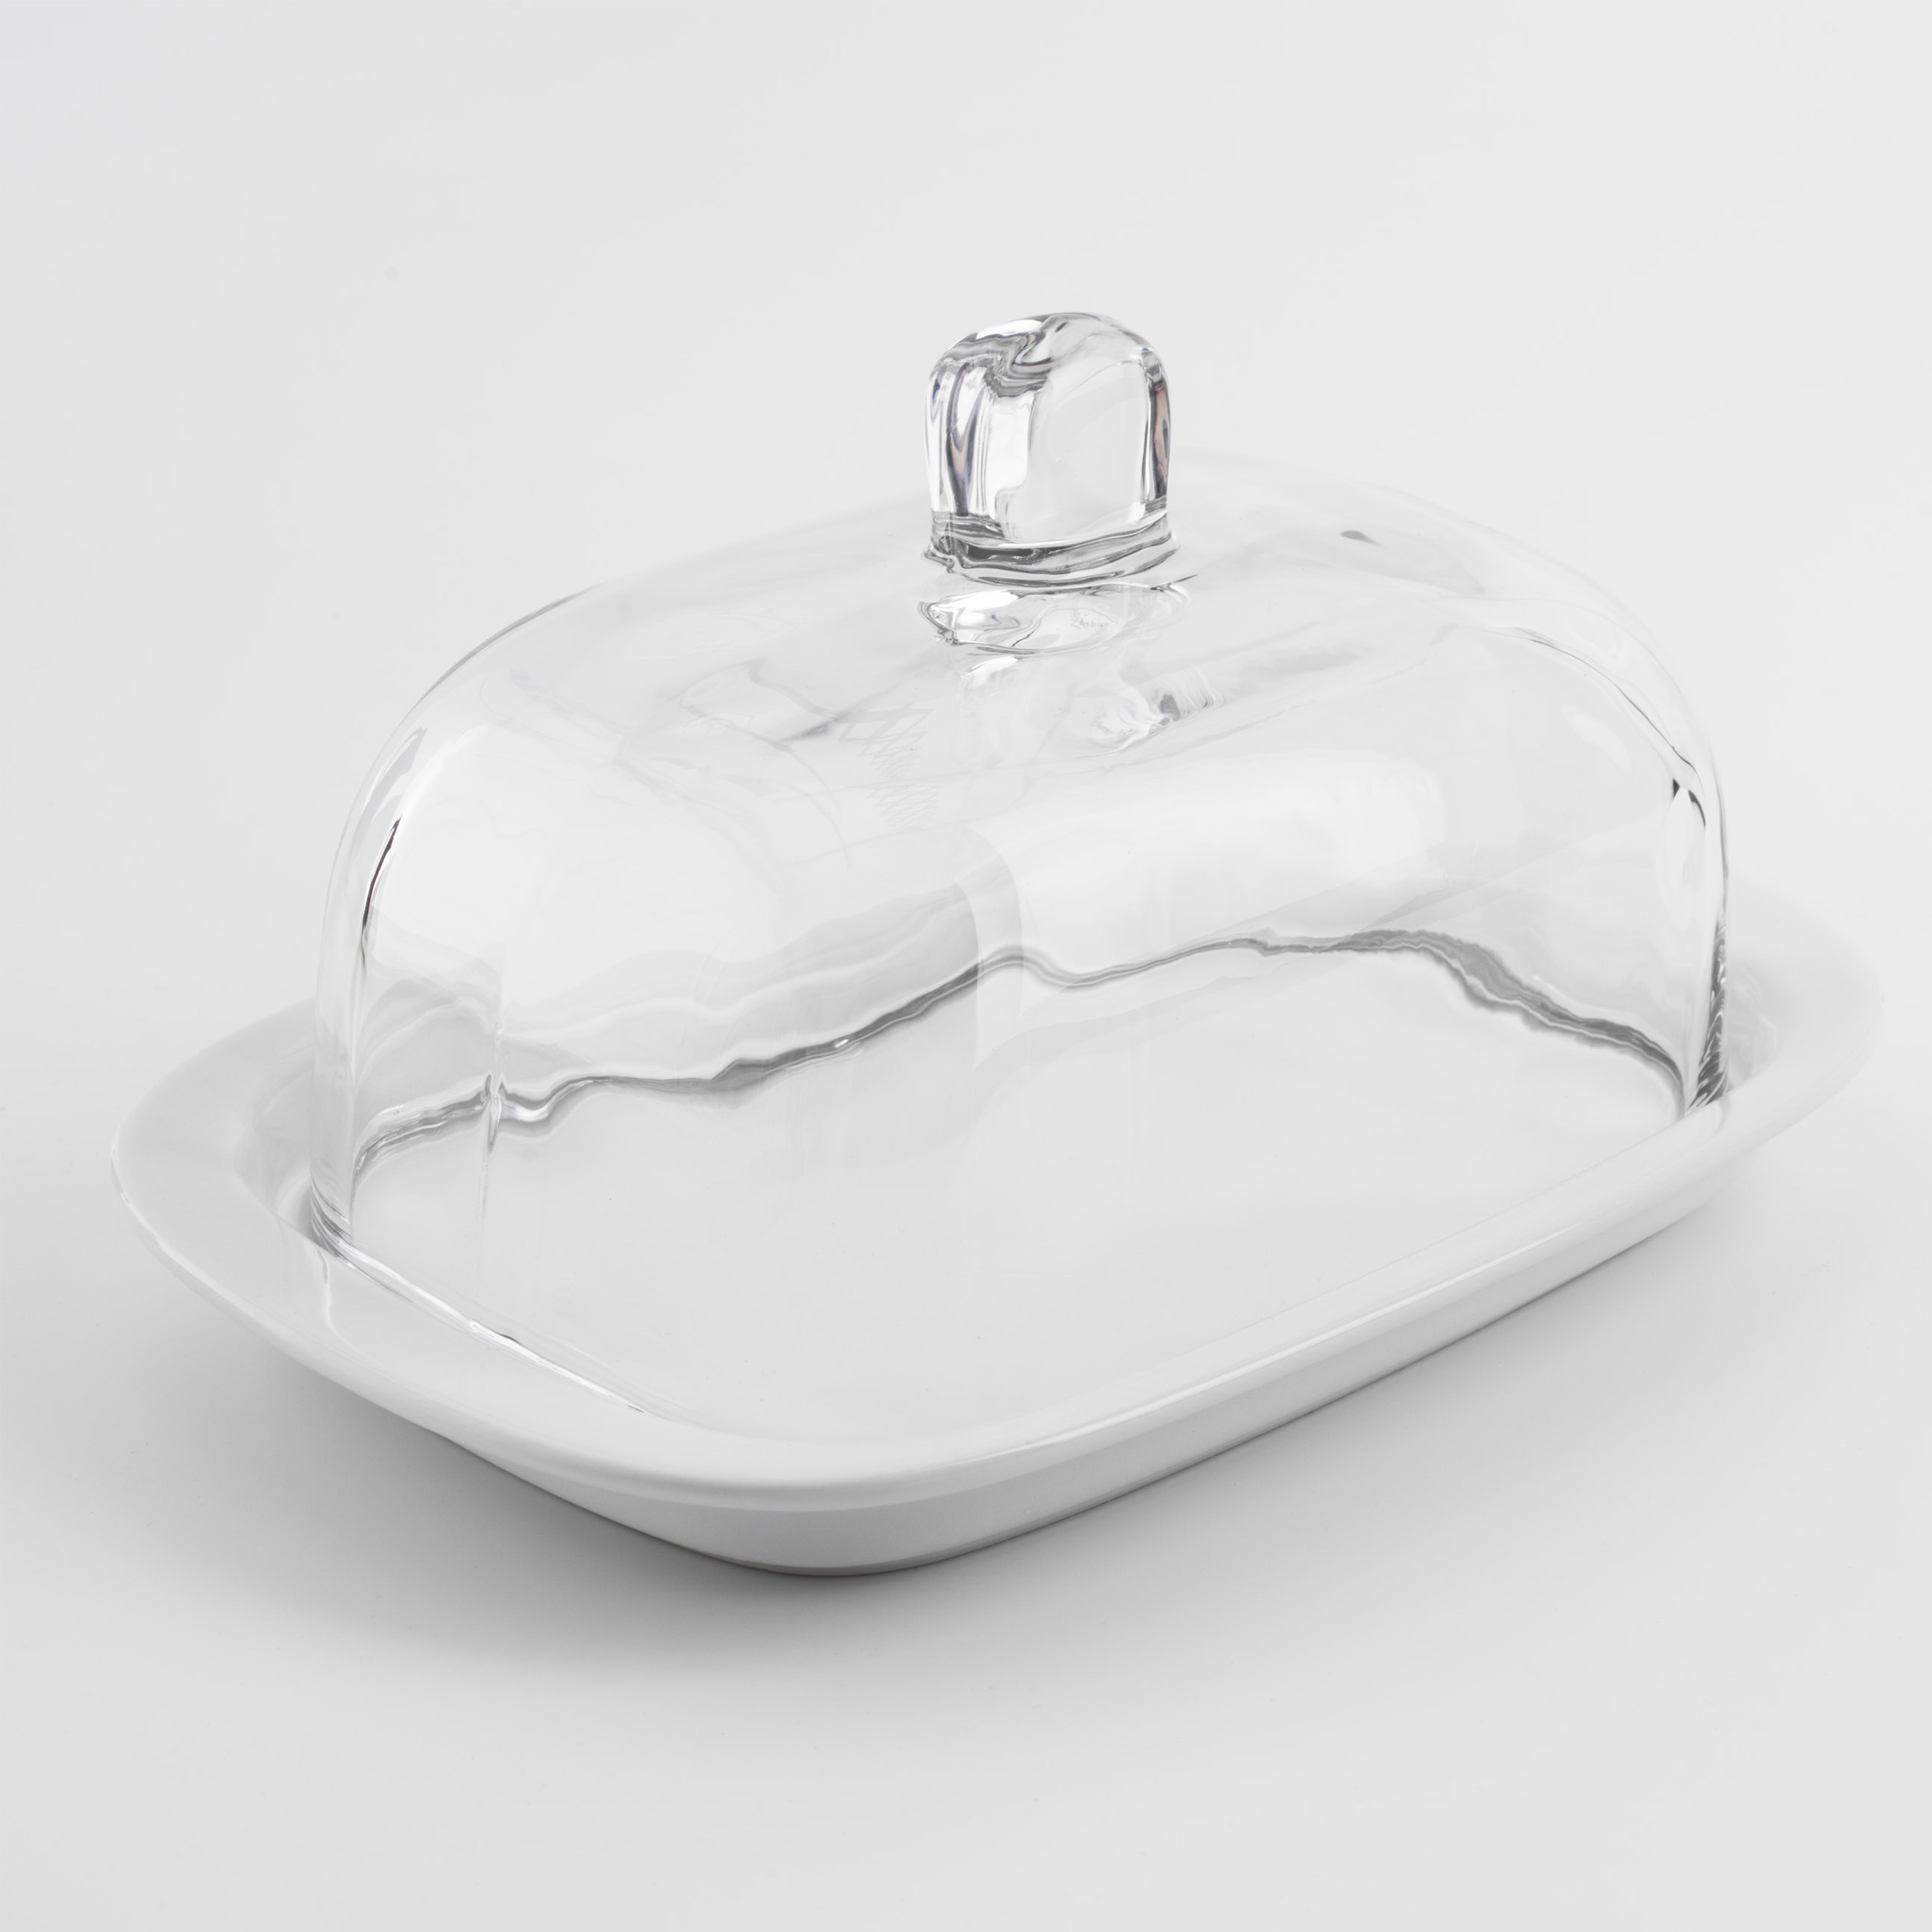 Масленка, 18 см, керамика/стекло, прямоугольная, белая, Volo  изображение № 3